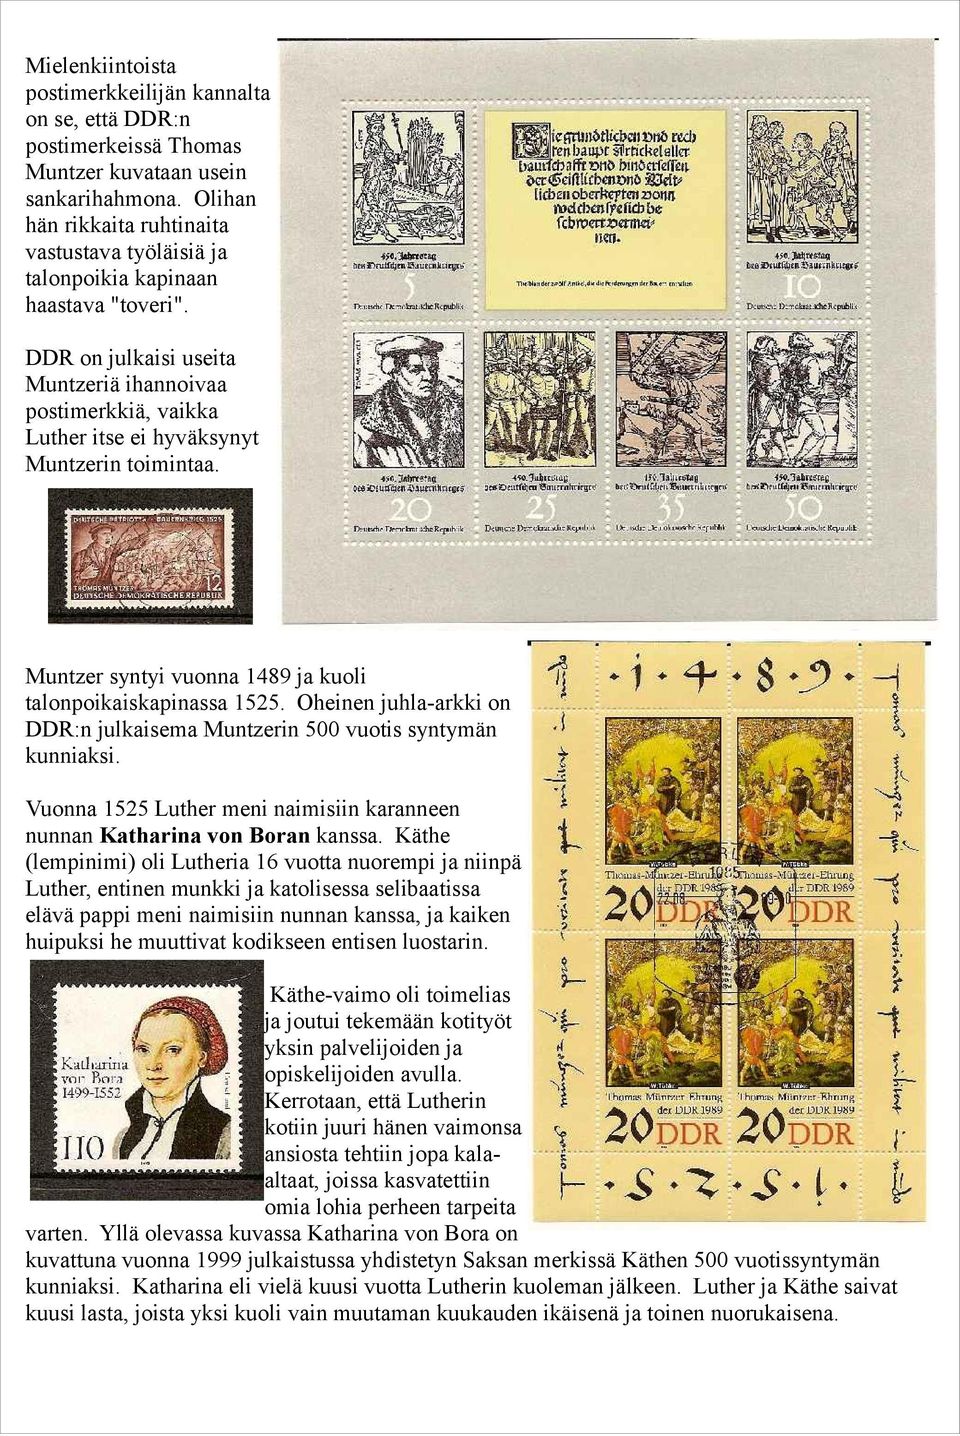 DDR on julkaisi useita Muntzeriä ihannoivaa postimerkkiä, vaikka Luther itse ei hyväksynyt Muntzerin toimintaa. Muntzer syntyi vuonna 1489 ja kuoli talonpoikaiskapinassa 1525.